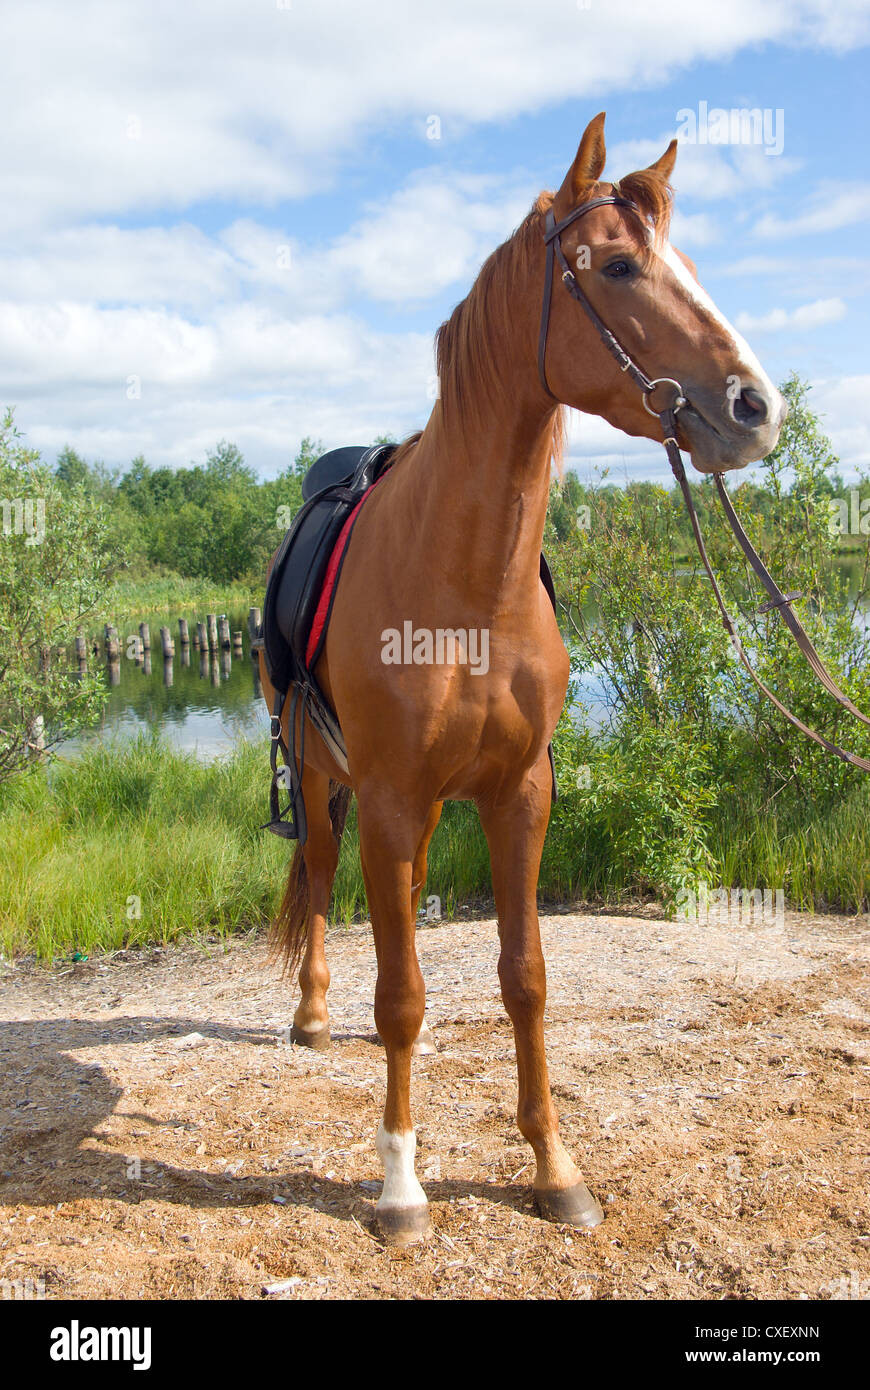 racehorse outdoor Stock Photo